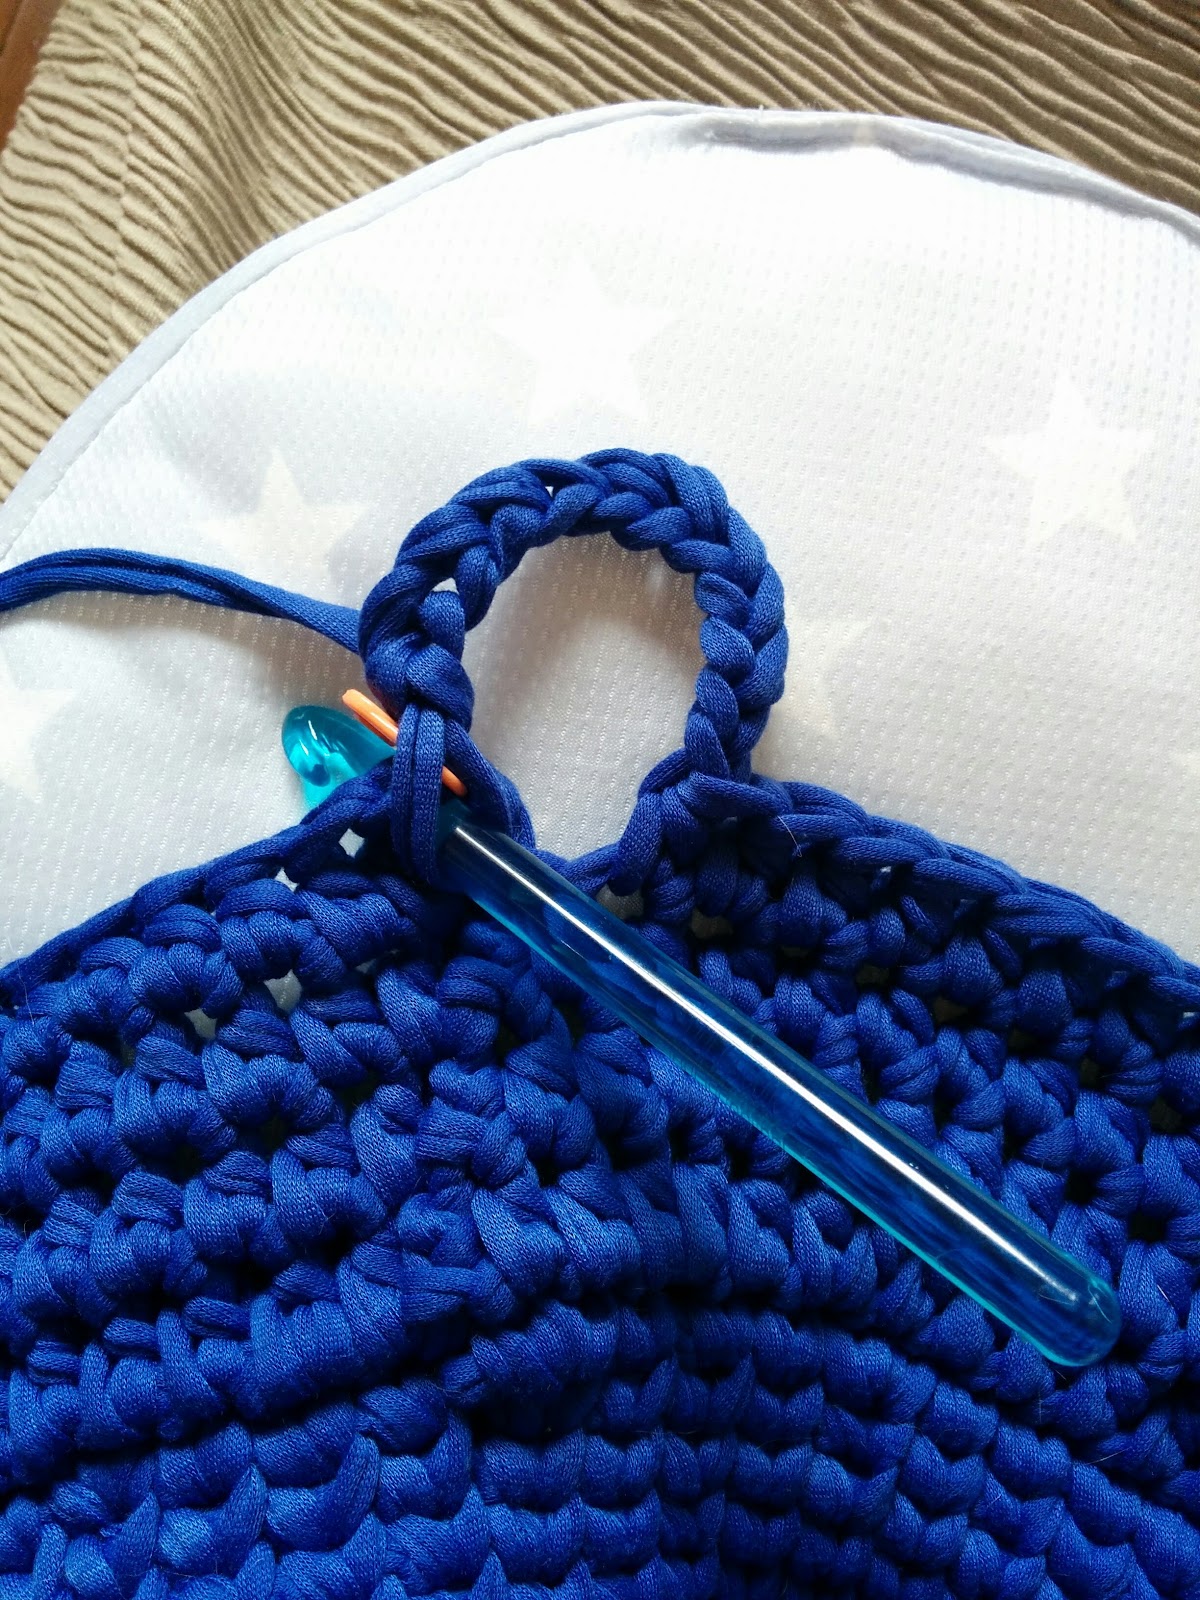 かぎ針編みtシャツヤーンのハンギングバスケットの編み方 Crochet And Me かぎ針編みの編み図と編み方